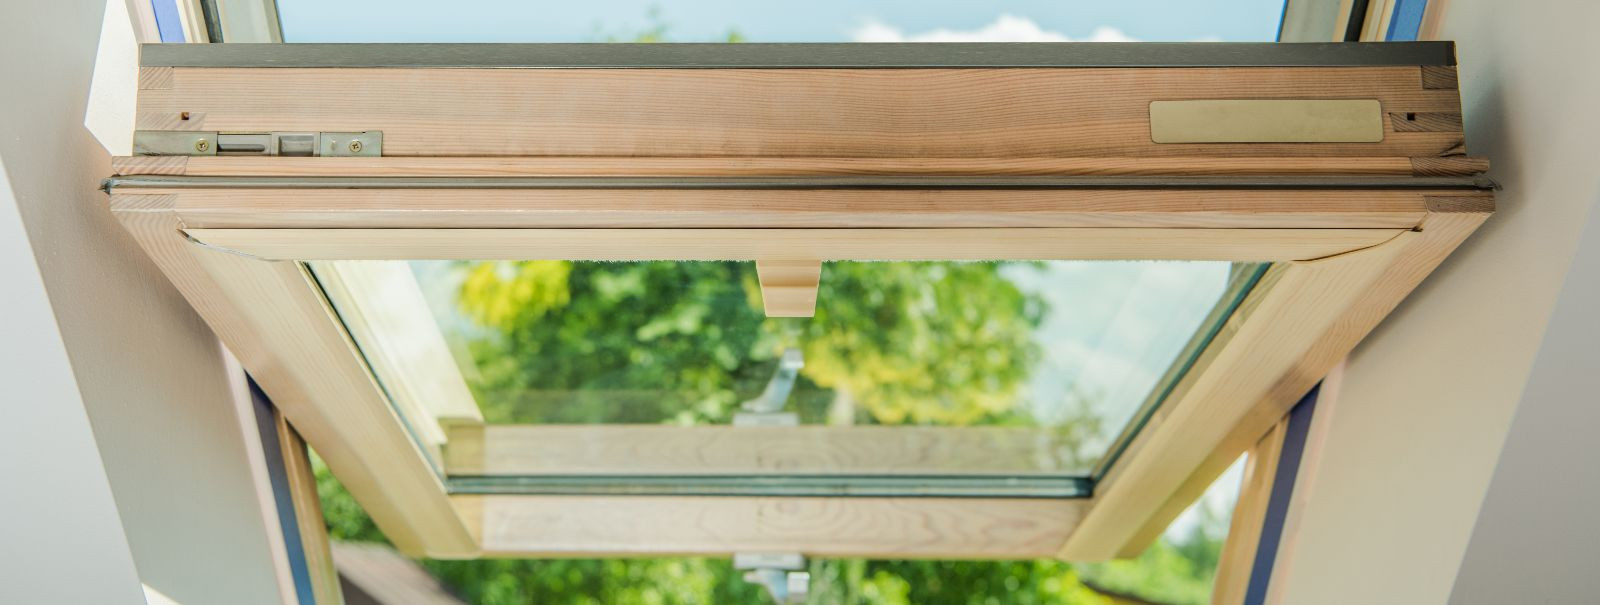 CrystalWindow OÜ-s usume, et õiged aknad ei ole ainult valguse toomiseks ruumi; need on elu, soojust ja stiili toomiseks teie koju või kontorisse. Alates meie l